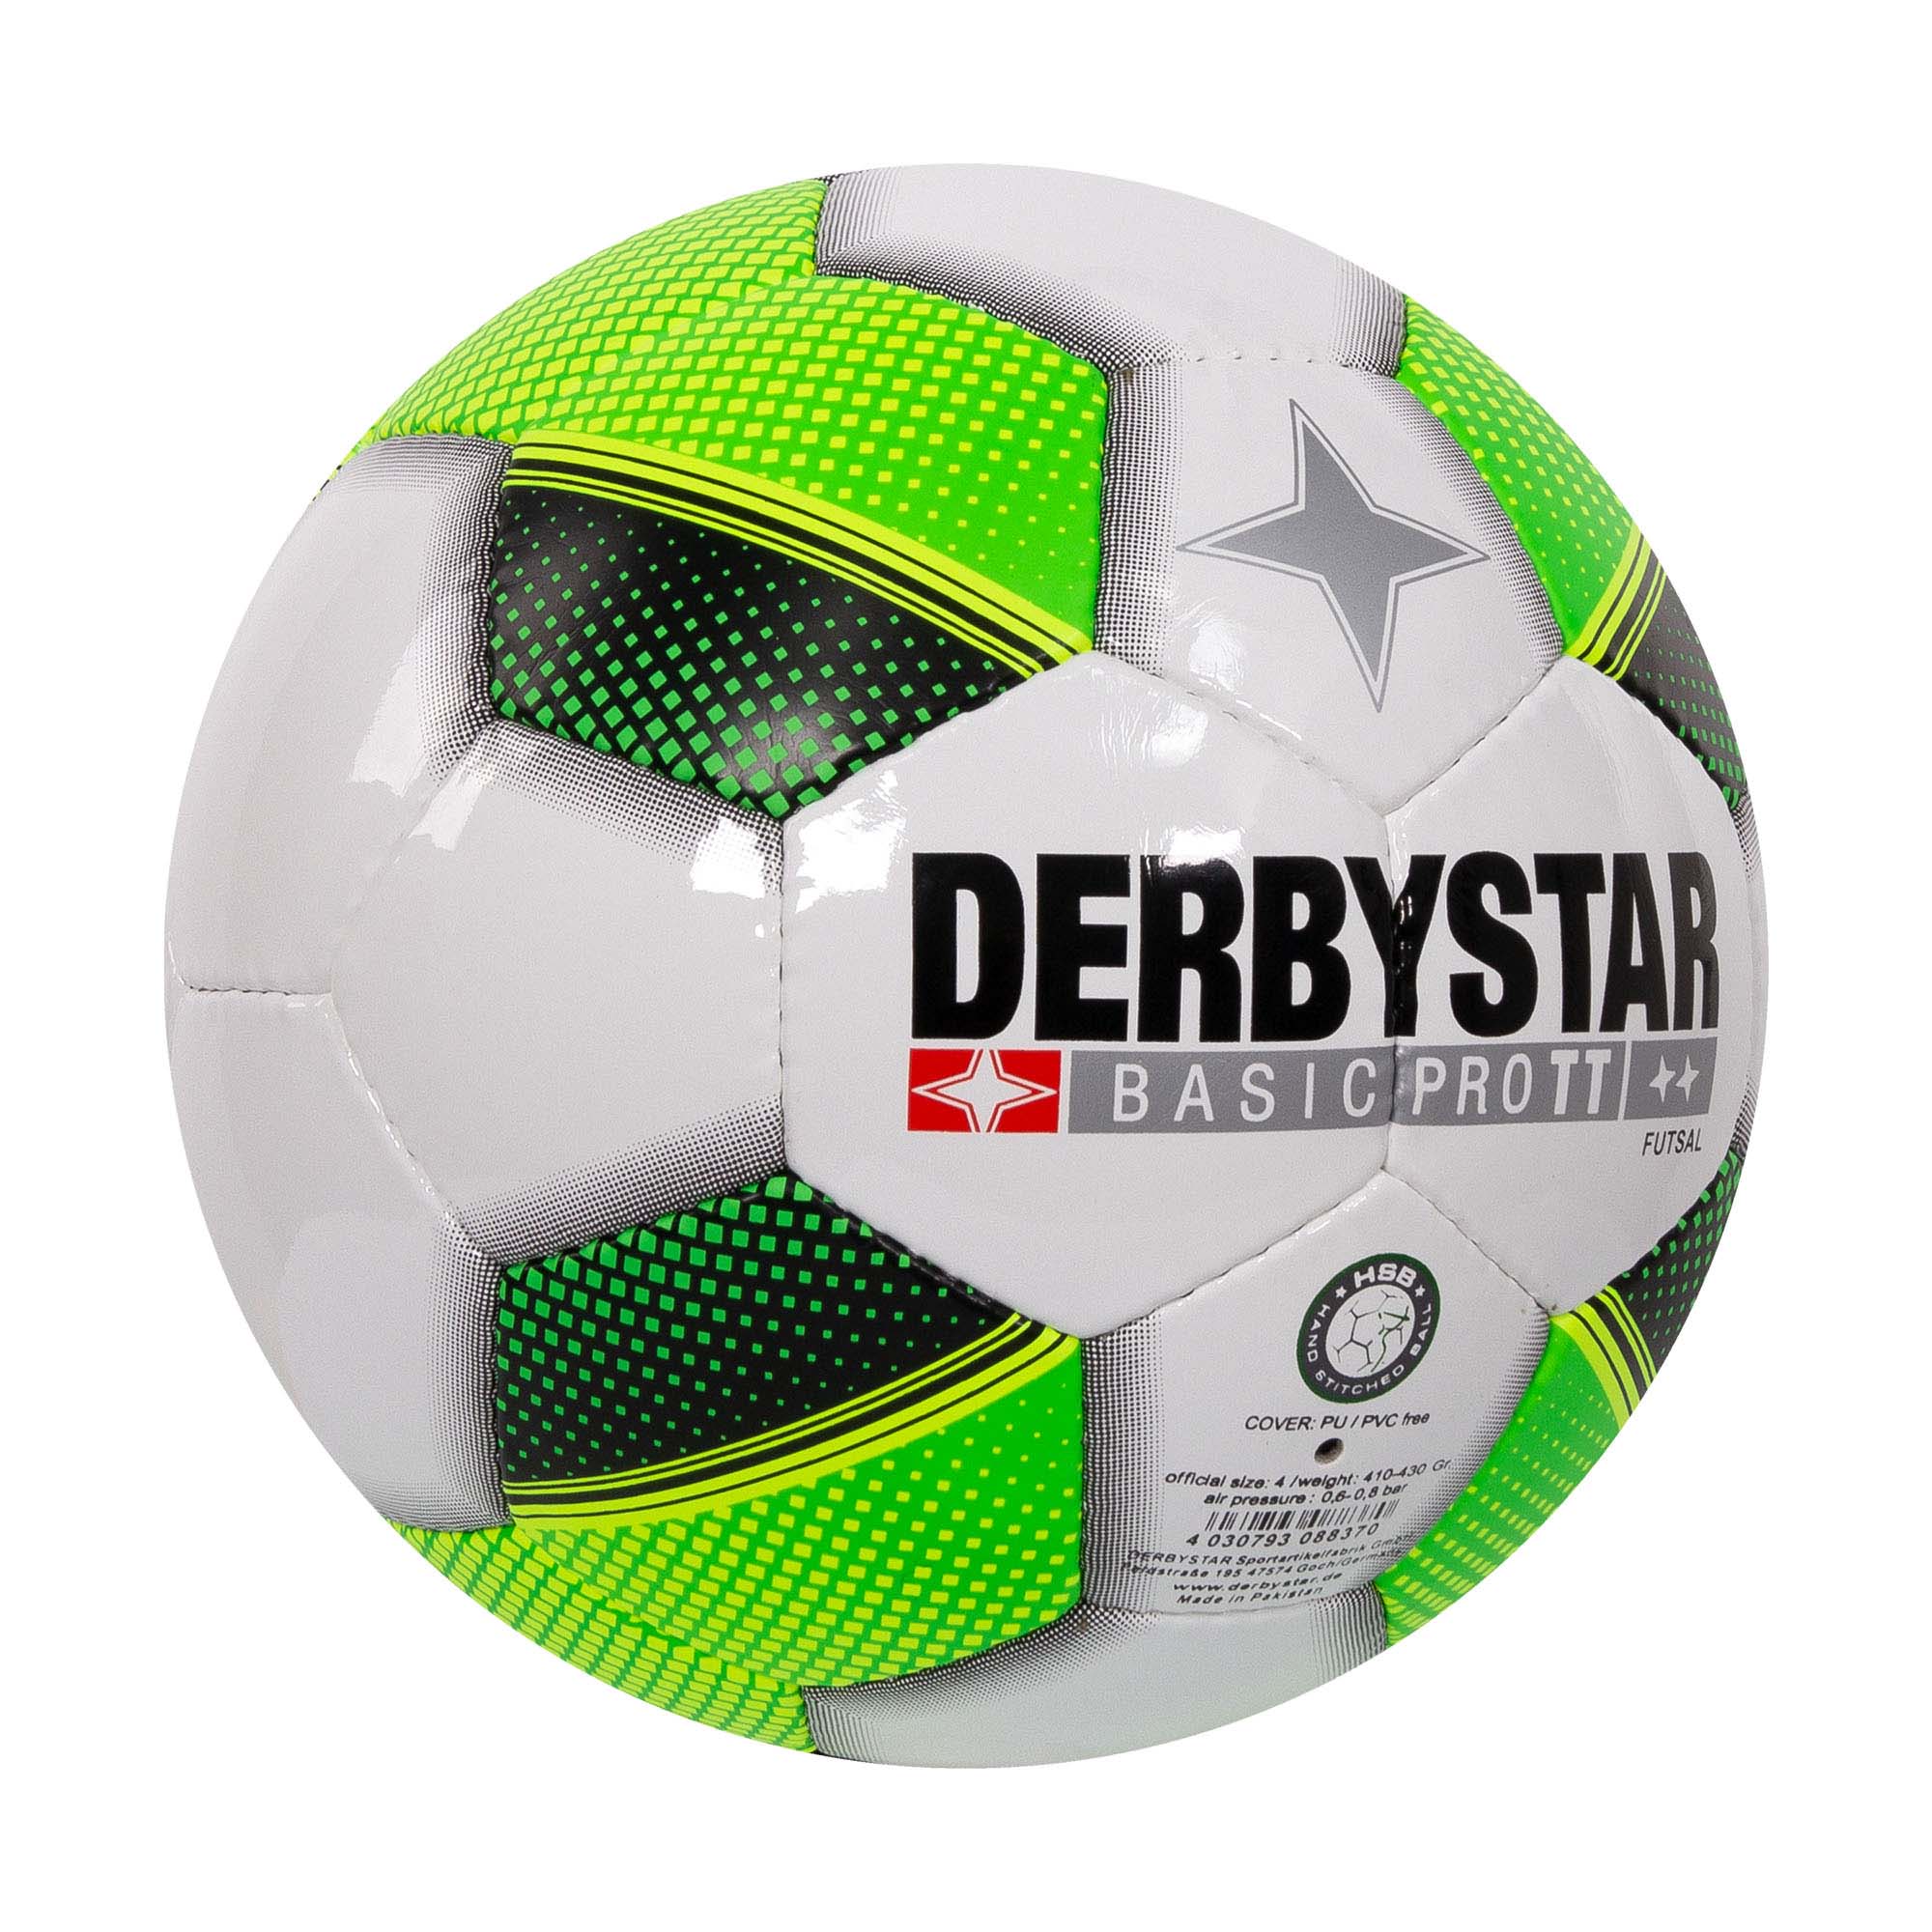 DERBYSTAR Futsal Basic Pro Tt